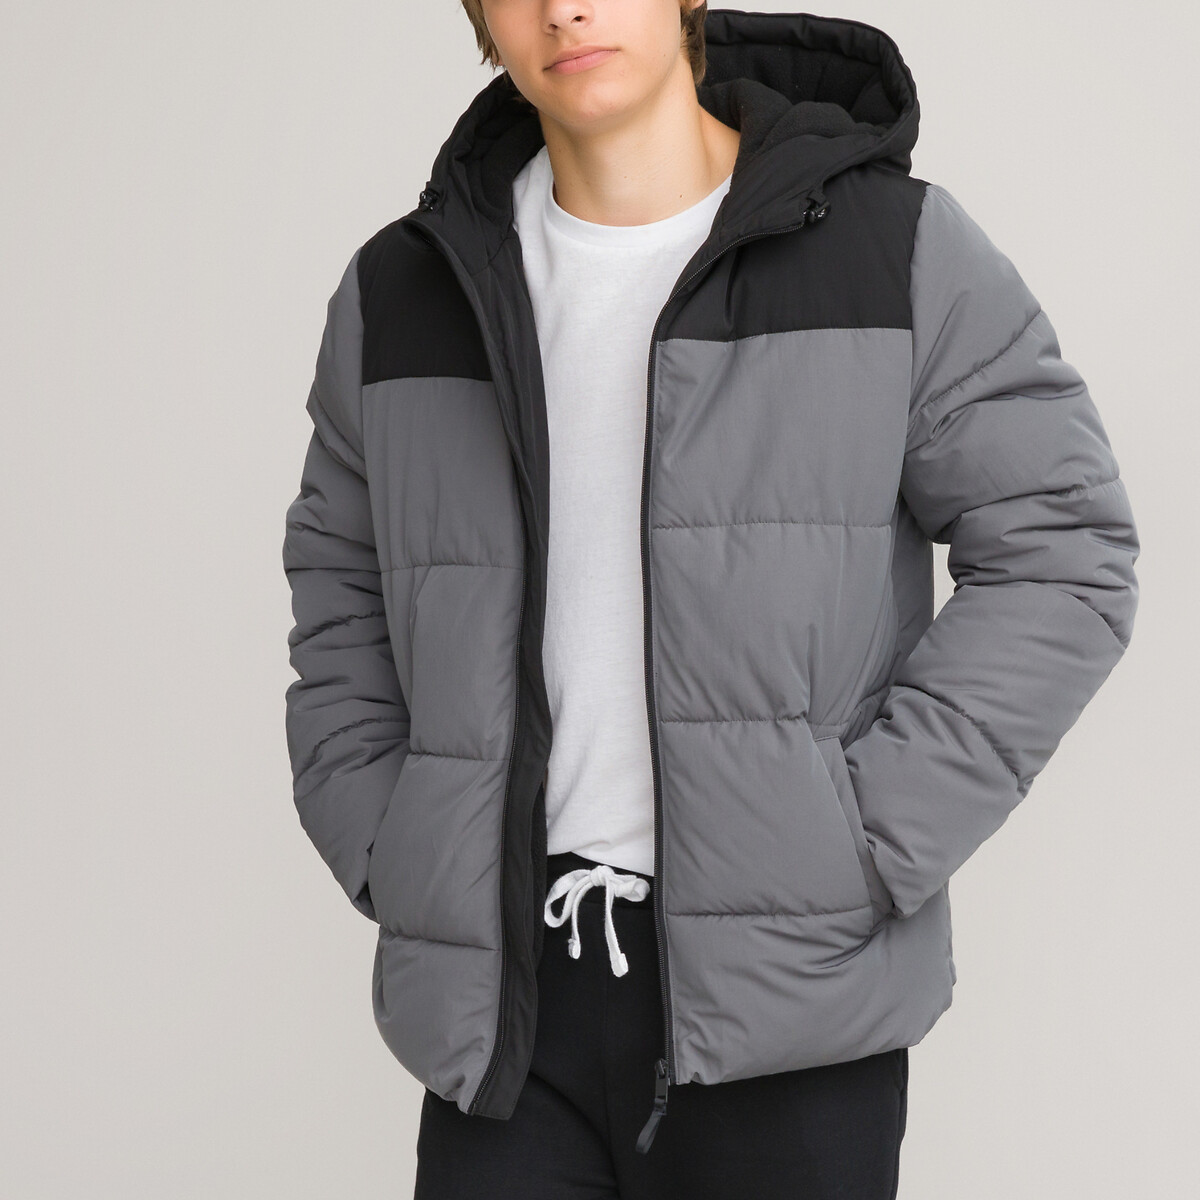 Куртка стеганая утепленная с капюшоном XXXS серый стеганая утепленная куртка с капюшоном